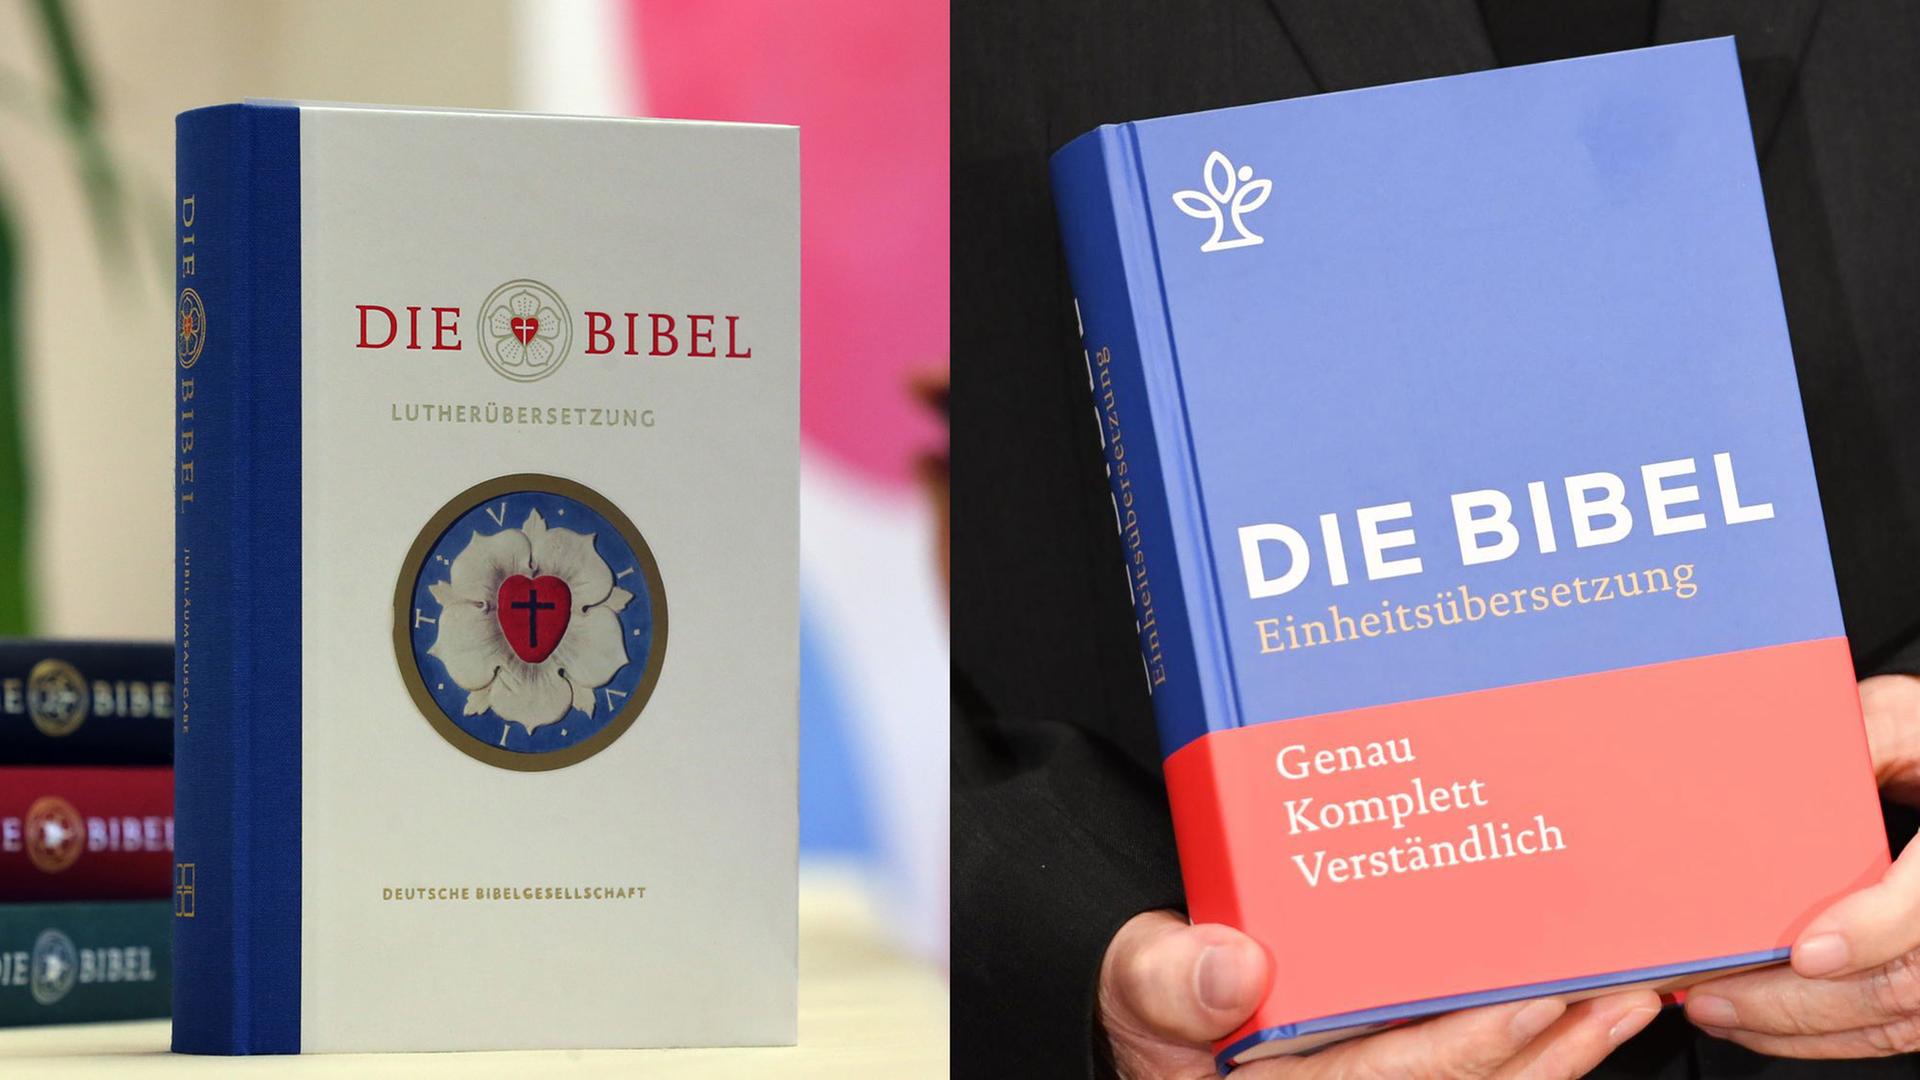 Zwei neue Bibeln: Links die überarbeitete Luther-Übersetzung, rechts die neue Einheitsübersetzung des Katholischen Bibelwerks